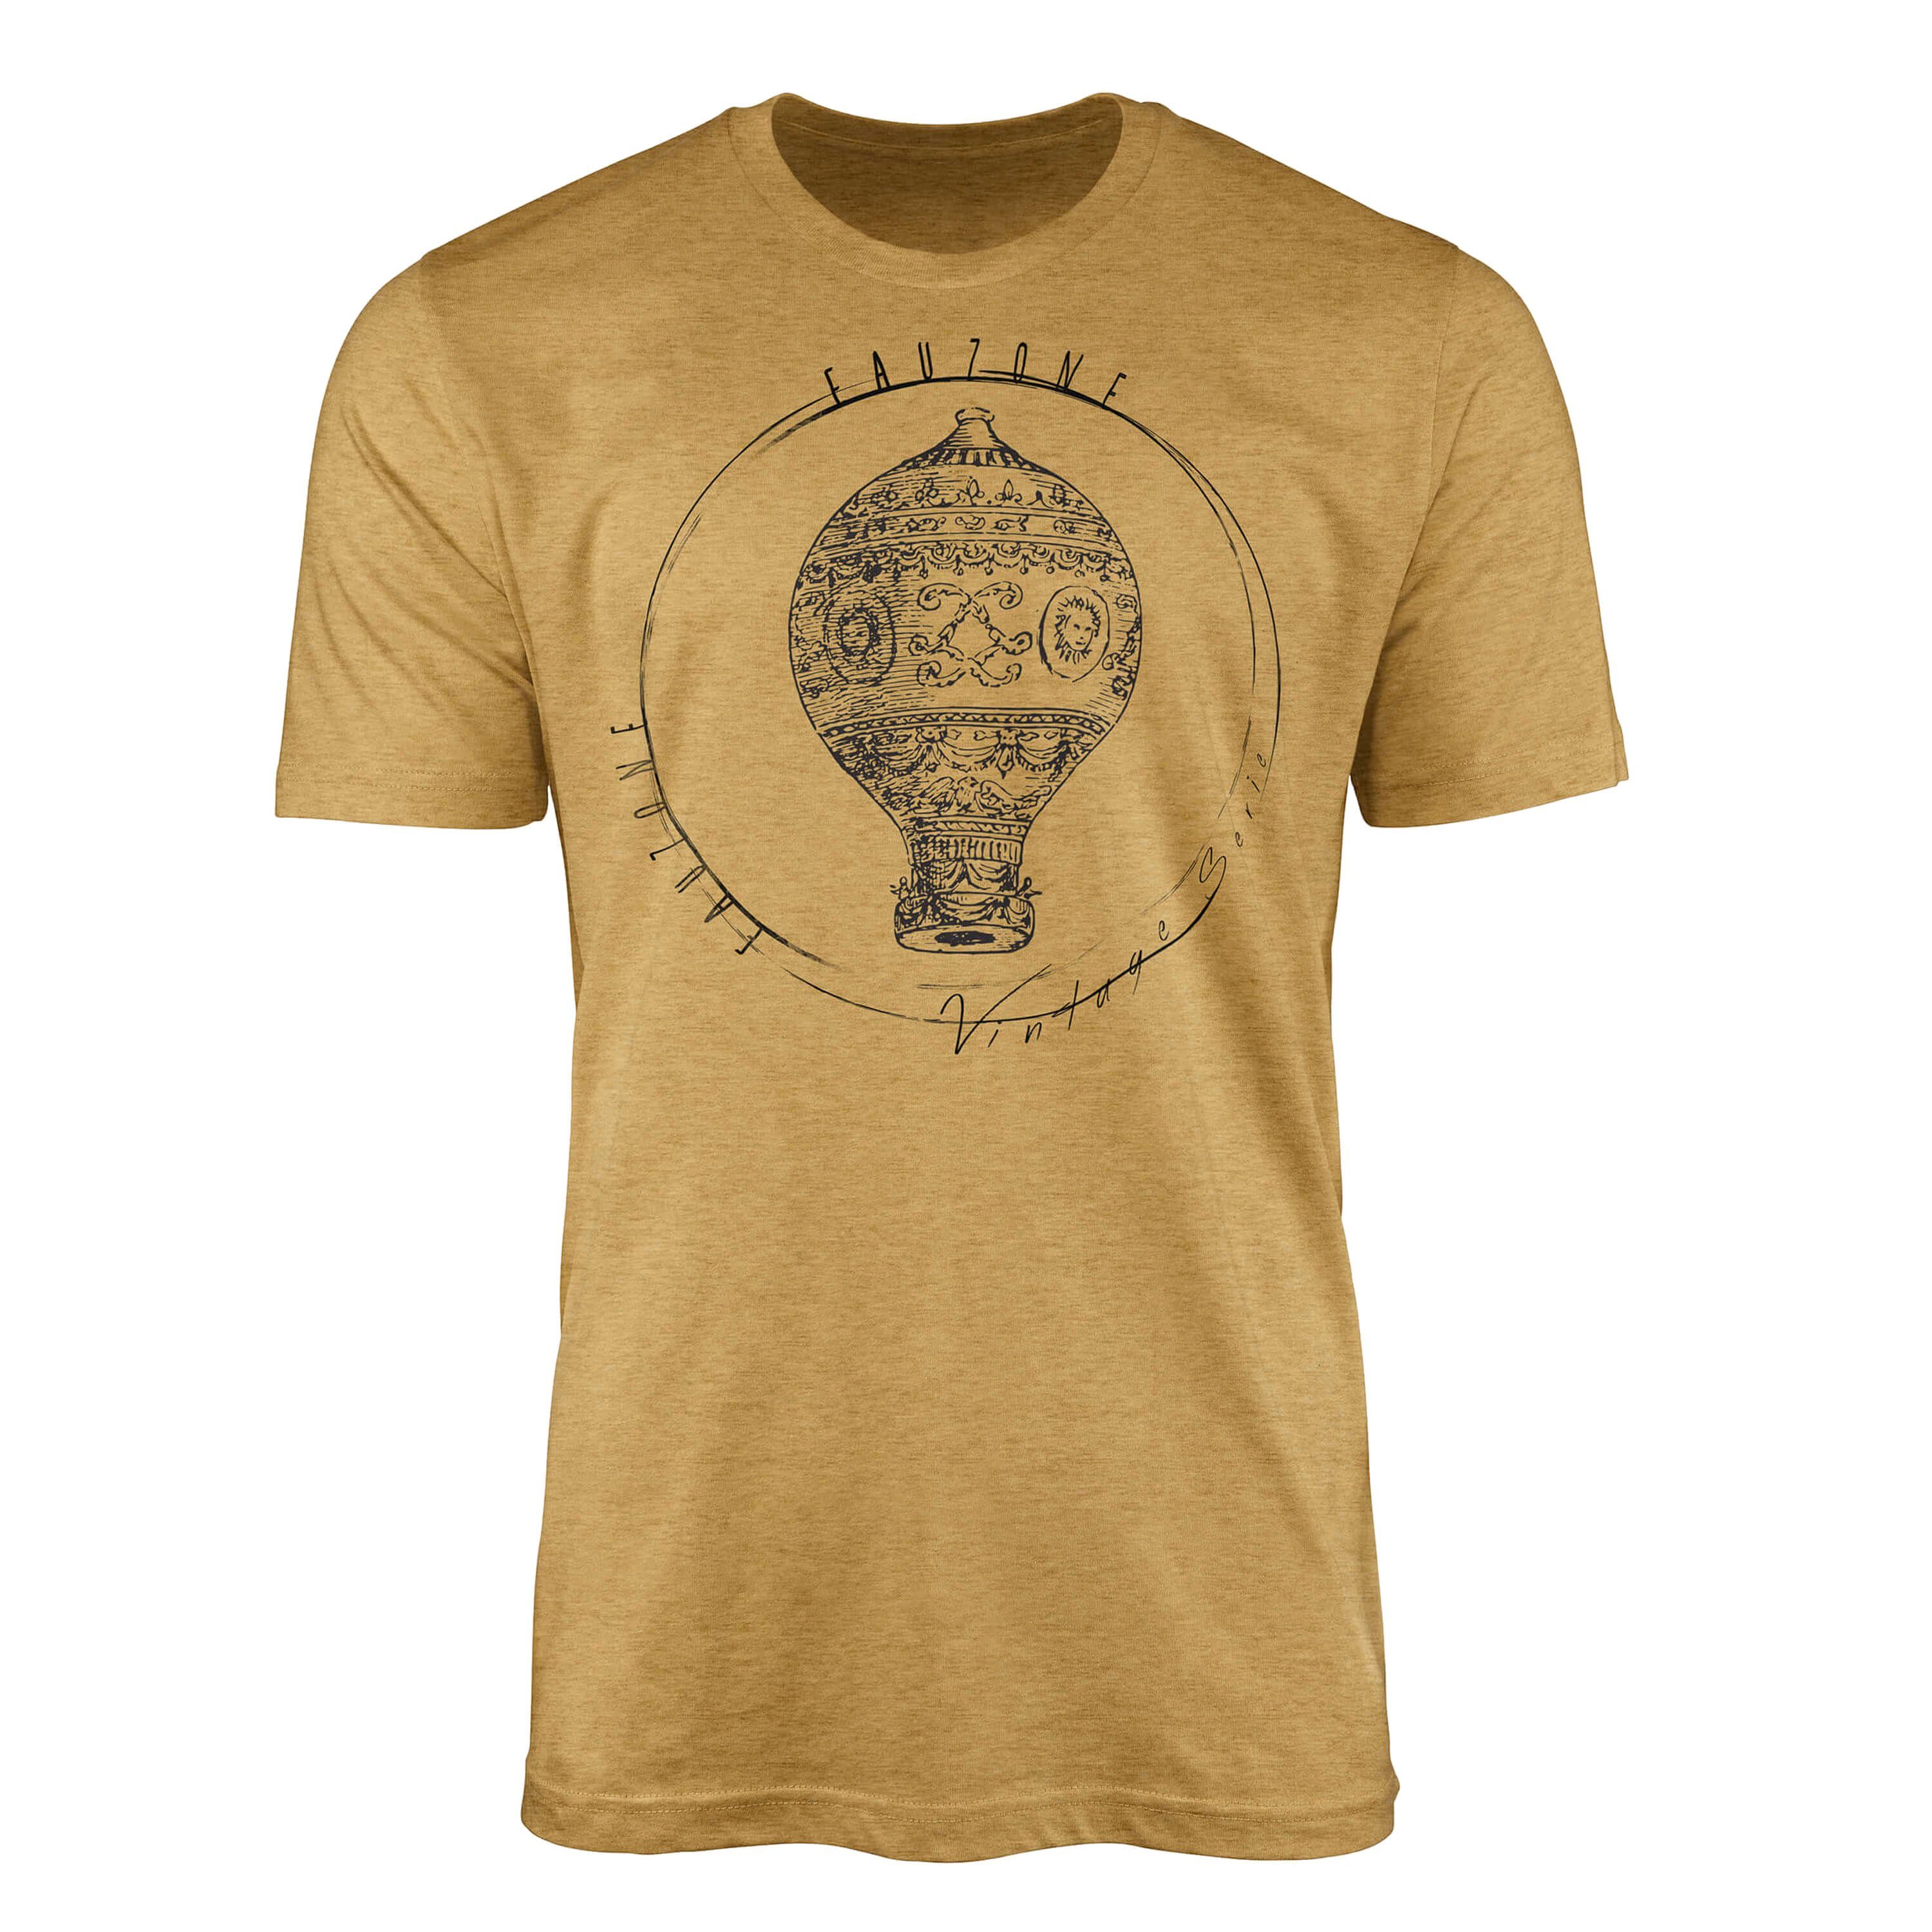 Sinus Art T-Shirt Herren Gold T-Shirt Heizluftballon Vintage Antique